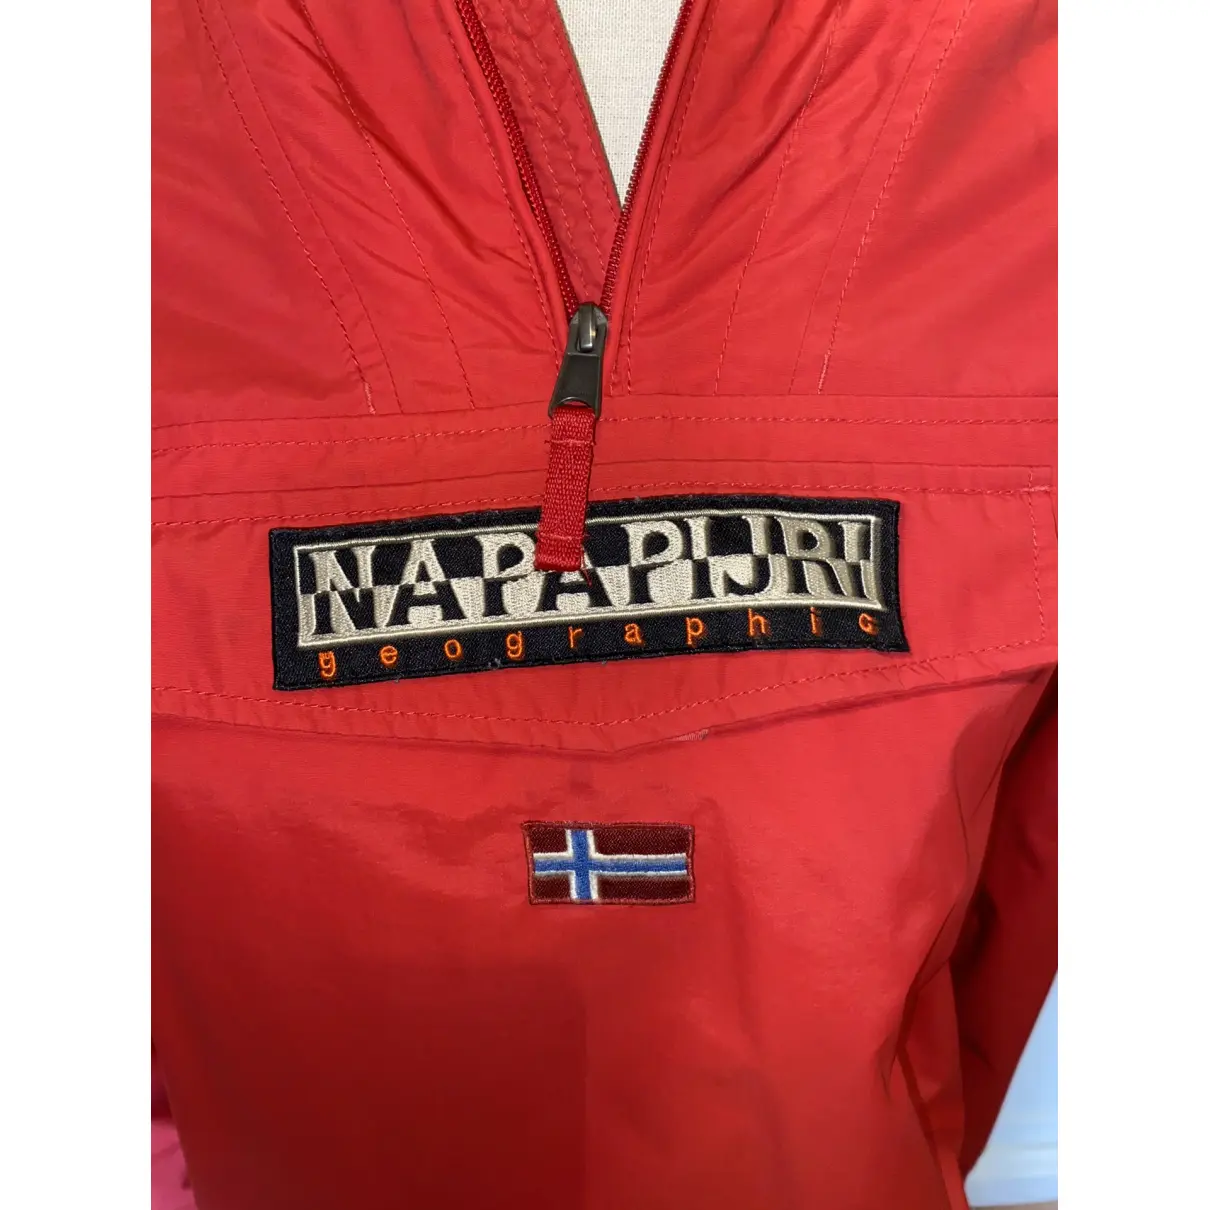 Buy Napapijri Jacket online